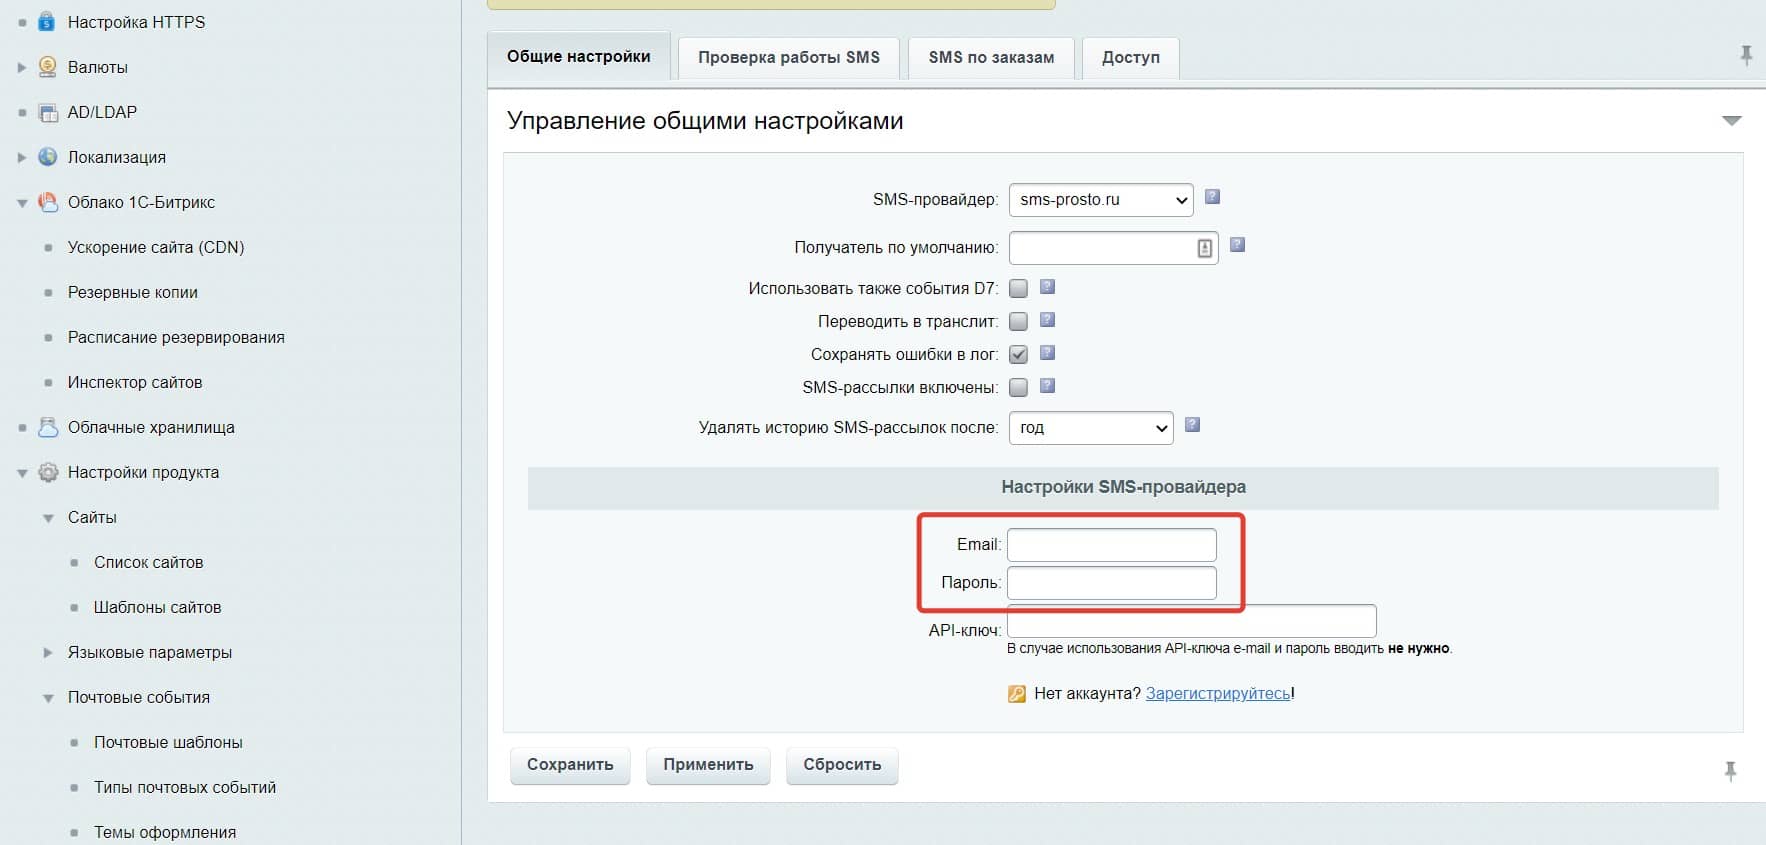  Укажите ваш логин и пароль от личного кабинета sms-prosto.ru